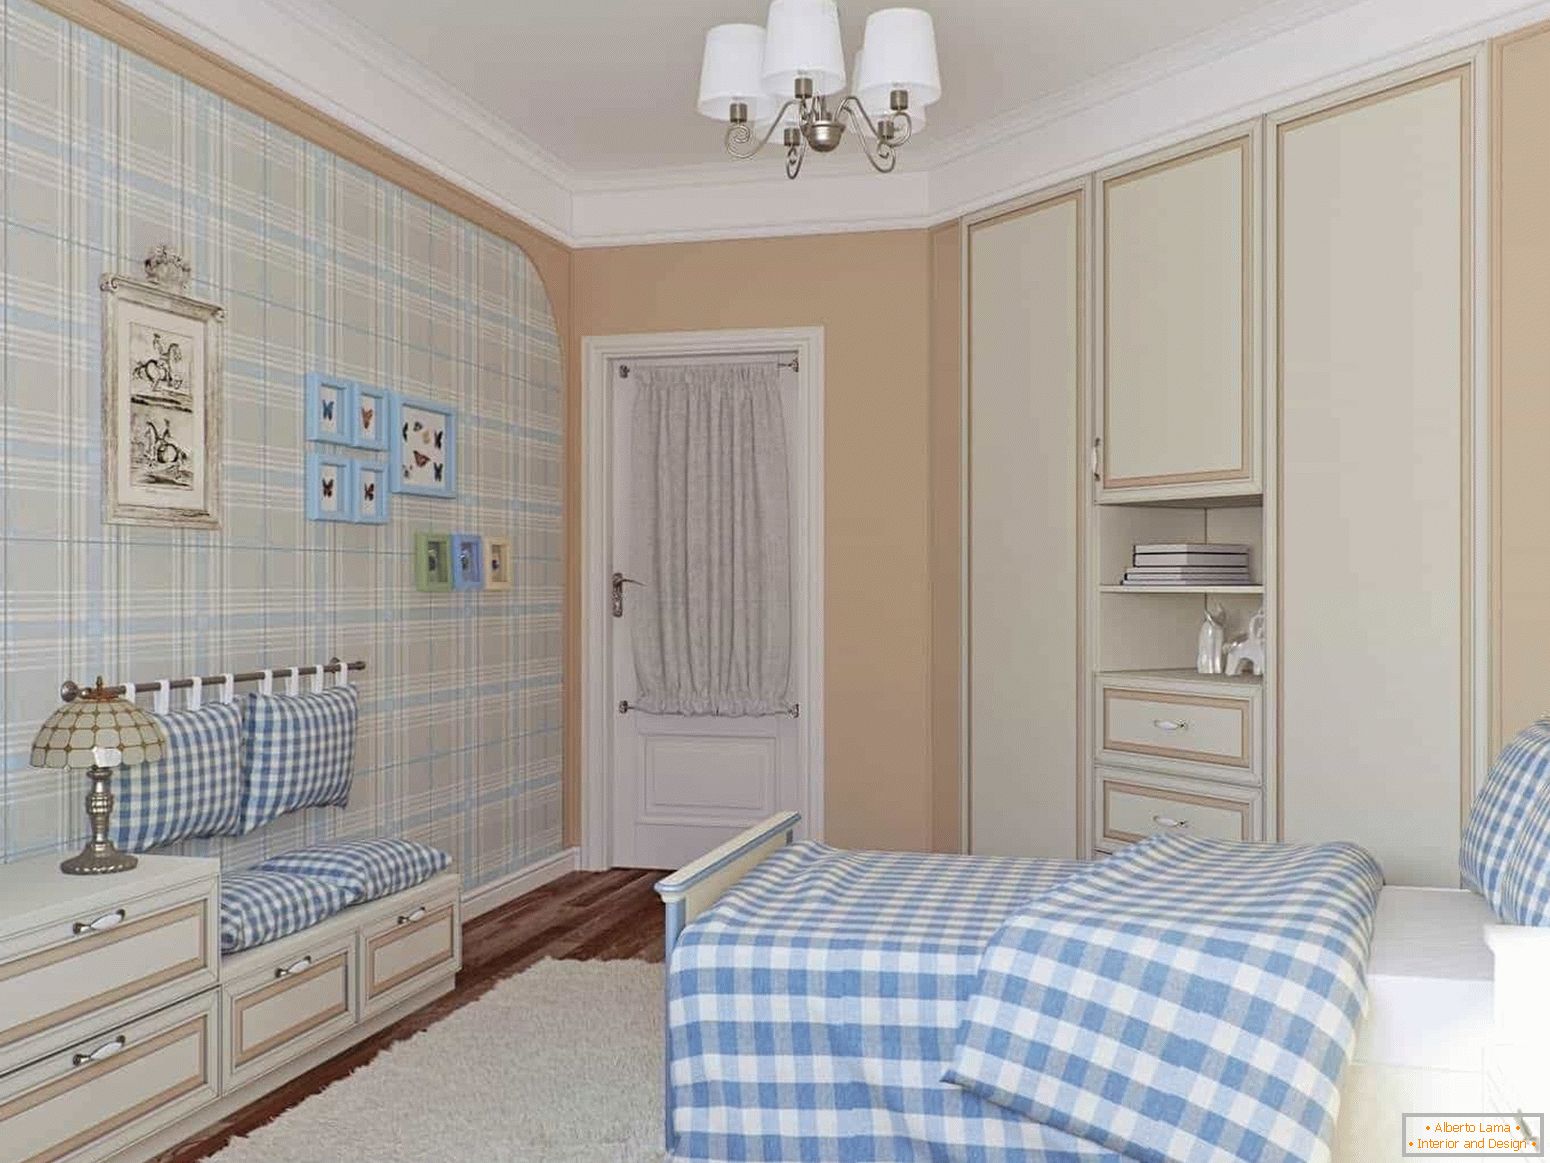 Ein Schlafzimmer für einen Teenager im provenzalischen Stil